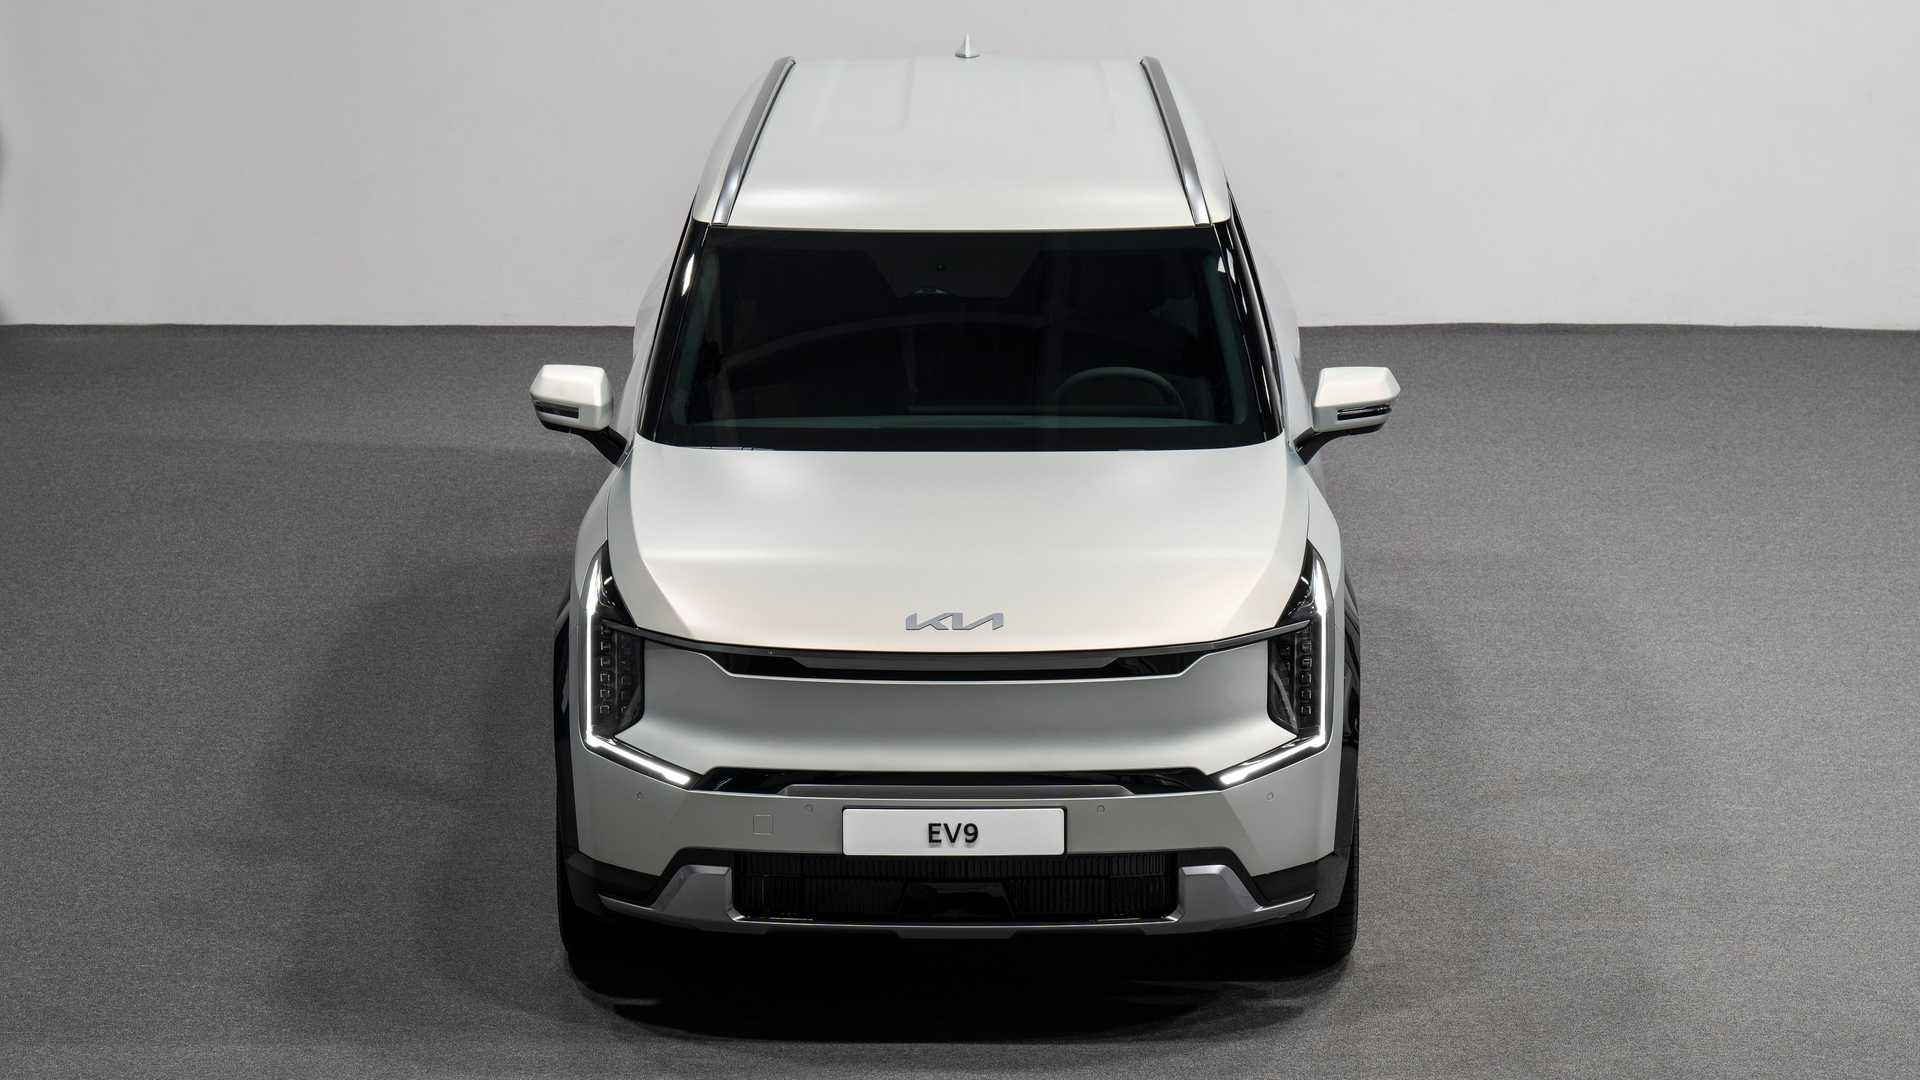 Yeni Kia EV9'un özellikleri açıklandı: 380 hp güç, 541 km'ye kadar menzil